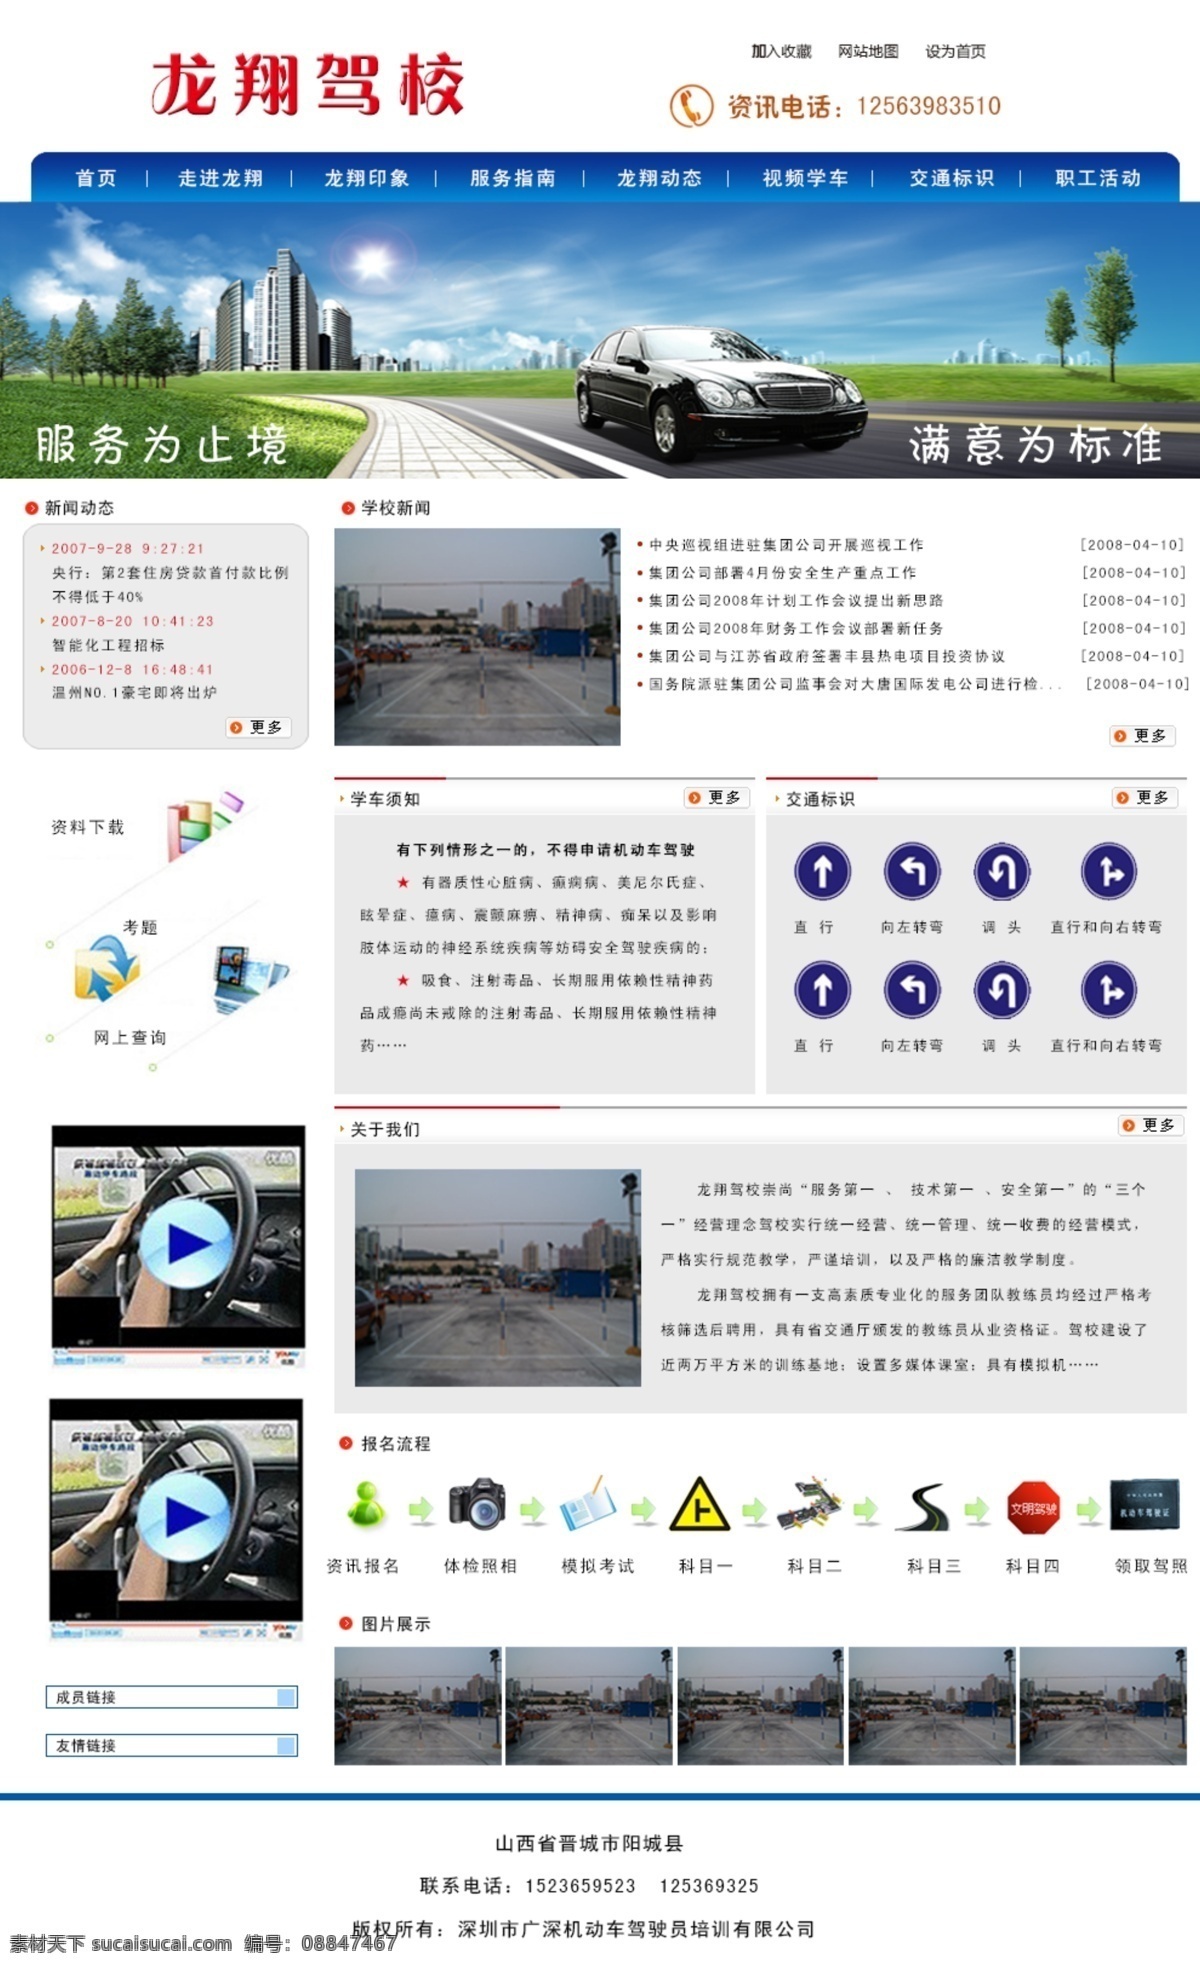 驾校 交通 视频 网页 网页模板 源文件 中文模板 模板下载 网页驾校 学车 psd源文件